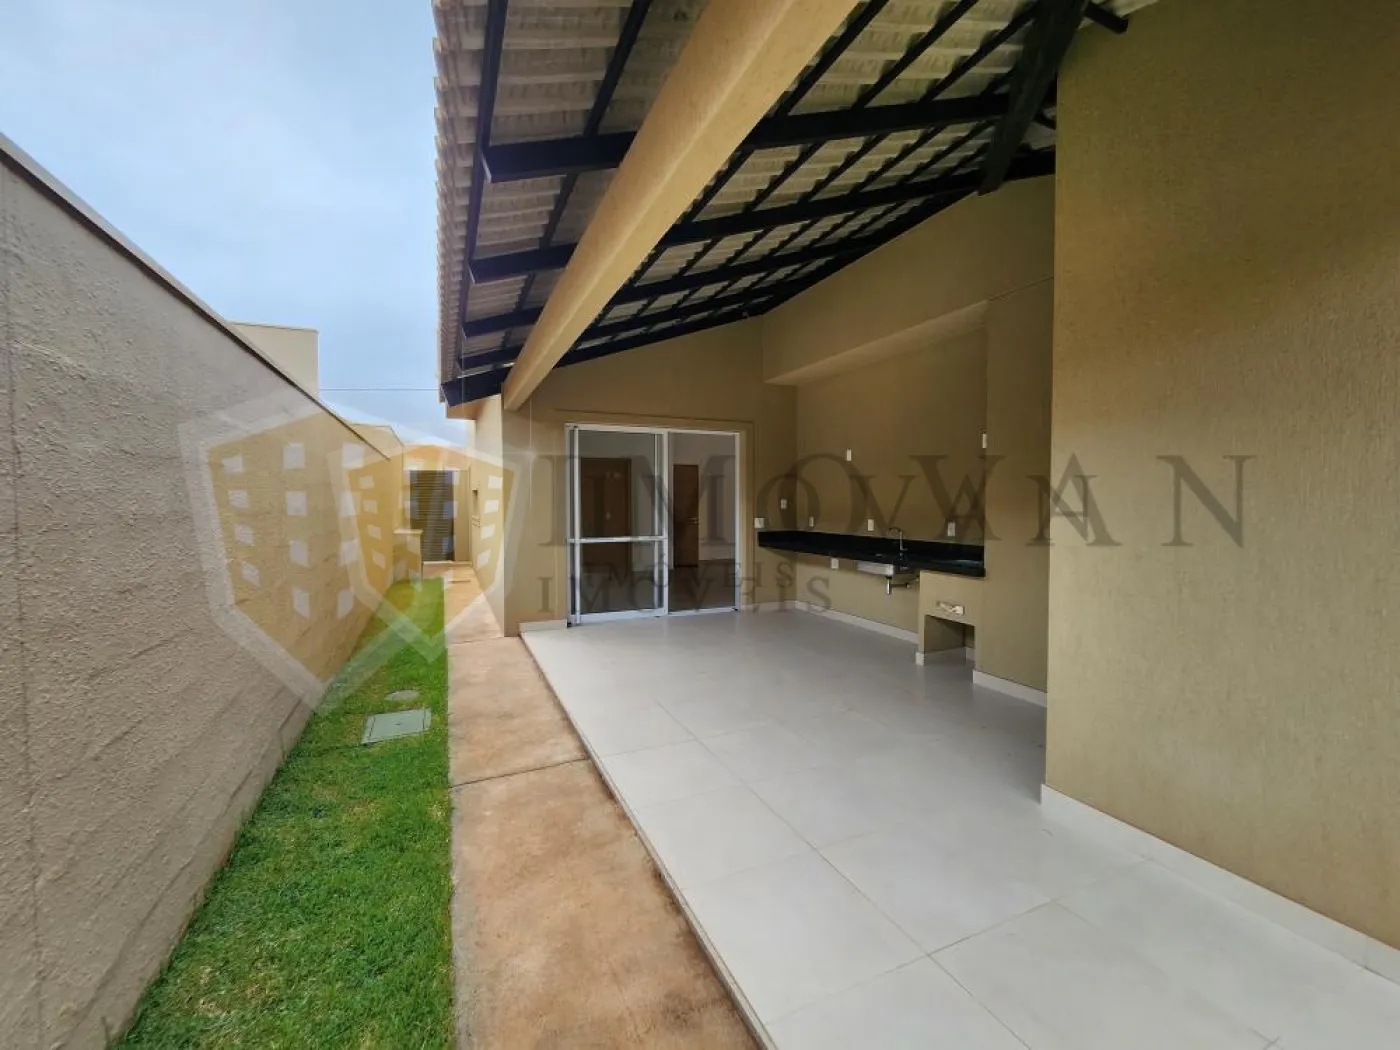 Comprar Casa / Condomínio em Cravinhos R$ 980.000,00 - Foto 11